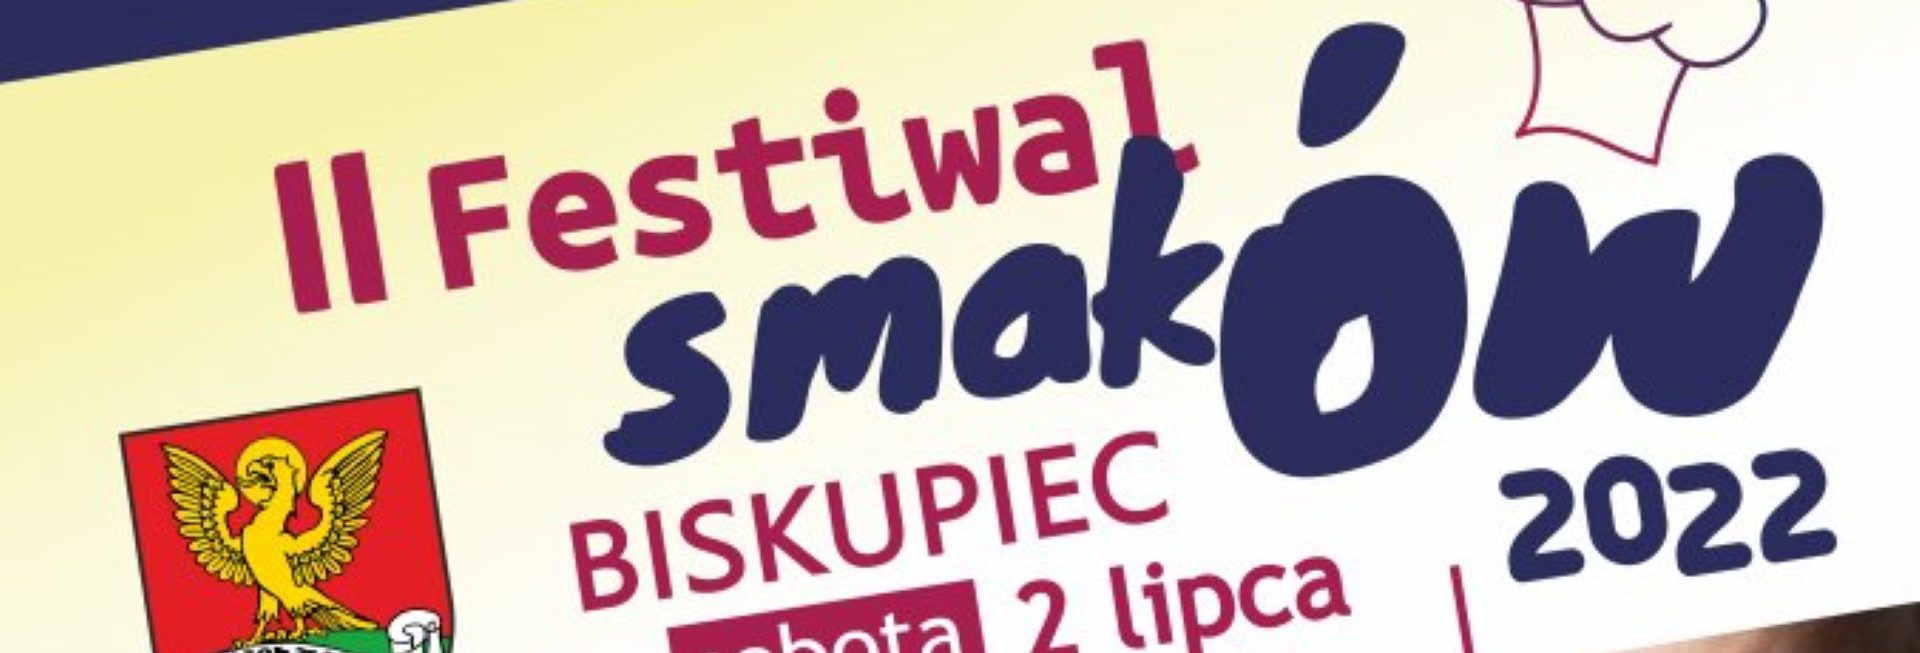 Plakat graficzny zapraszający do Biskupca k. Iławy w powiecie nowomiejskim na Festiwal Smaków - Koncert ZENKA MARTYNIUKA Biskupiec k. Iławy 2022.